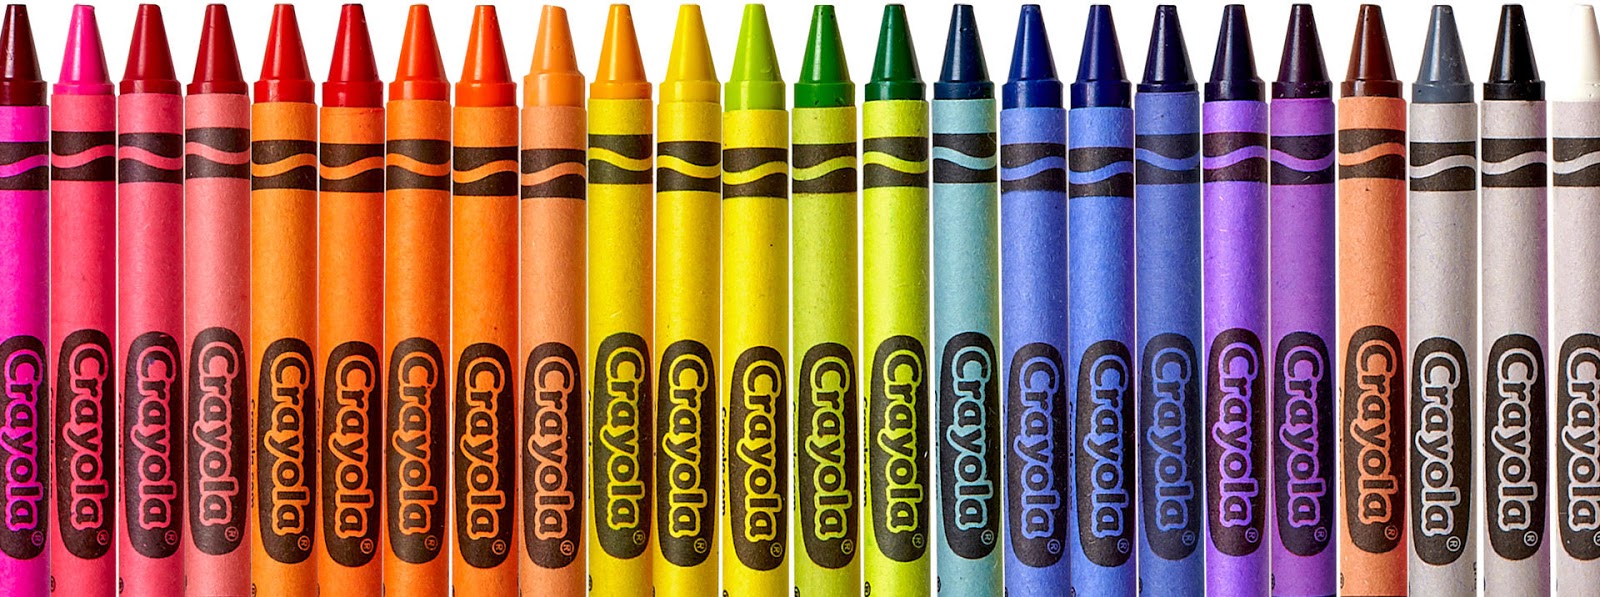 dun-giljan-s-blog-crayons